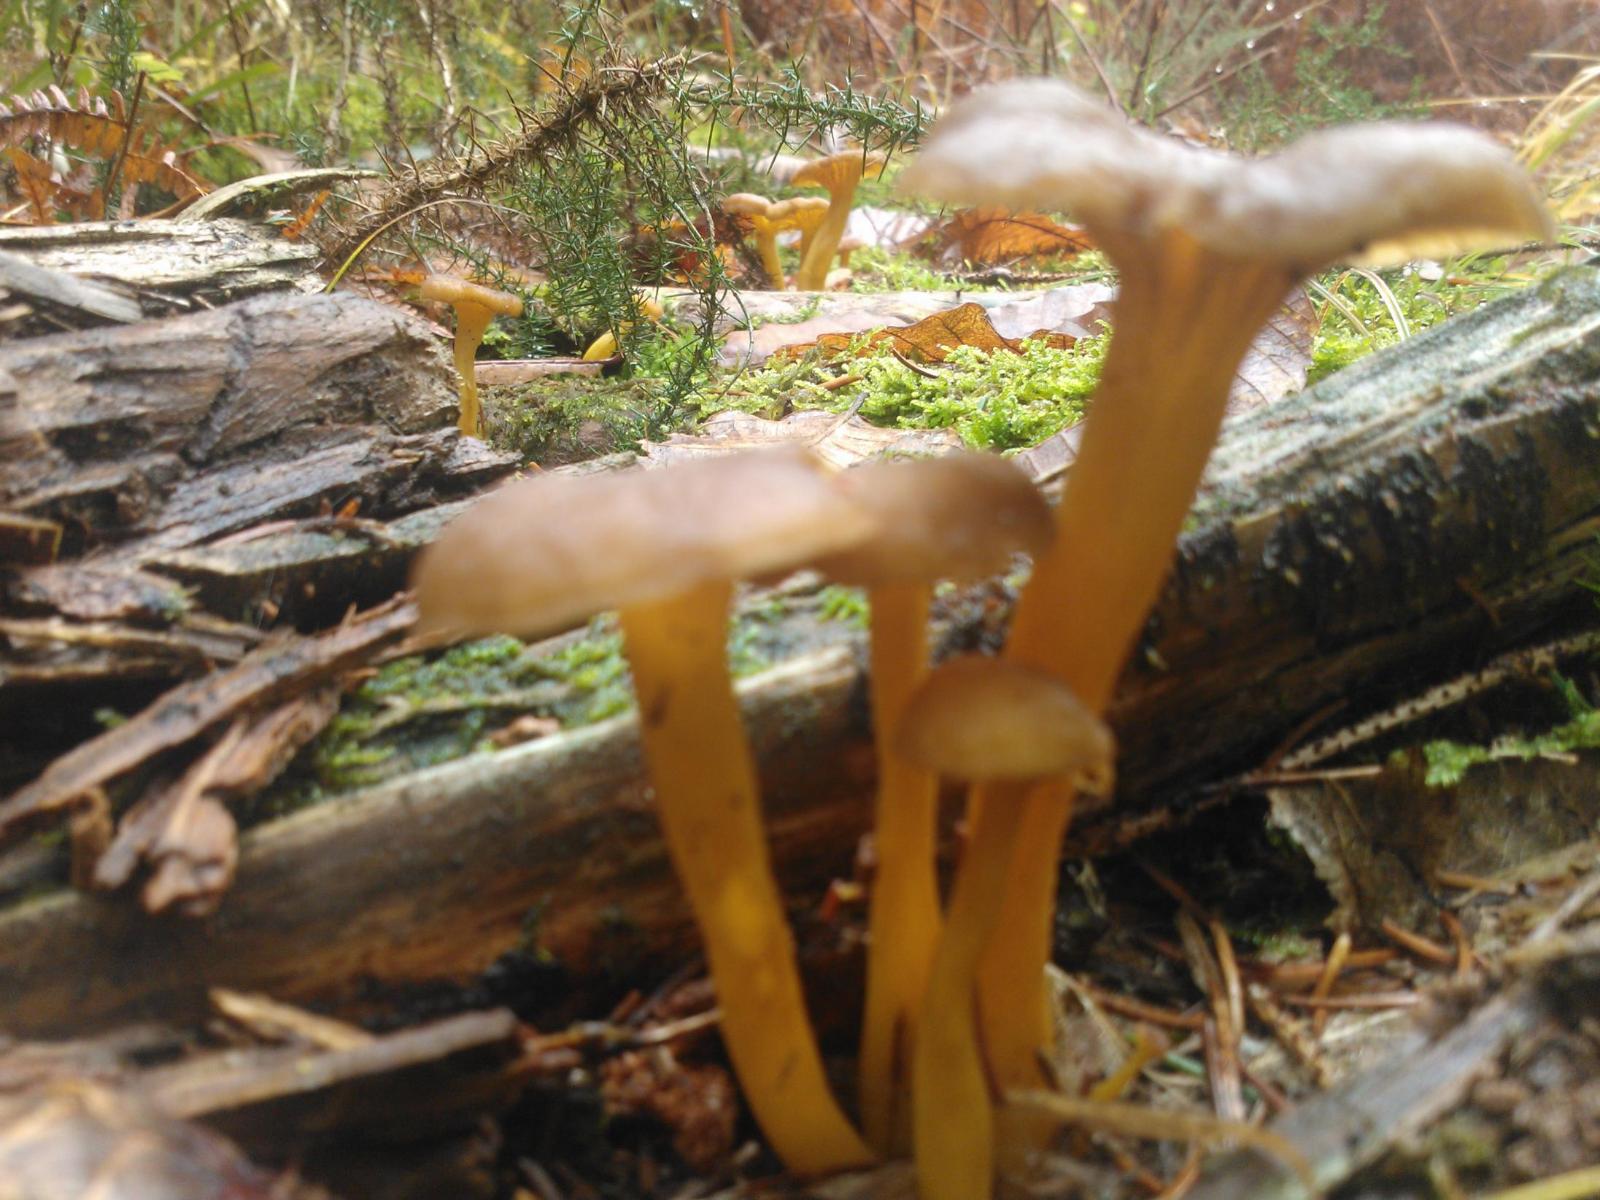 Oradour-sur-Vayres : Achat aux particuliers de champignons